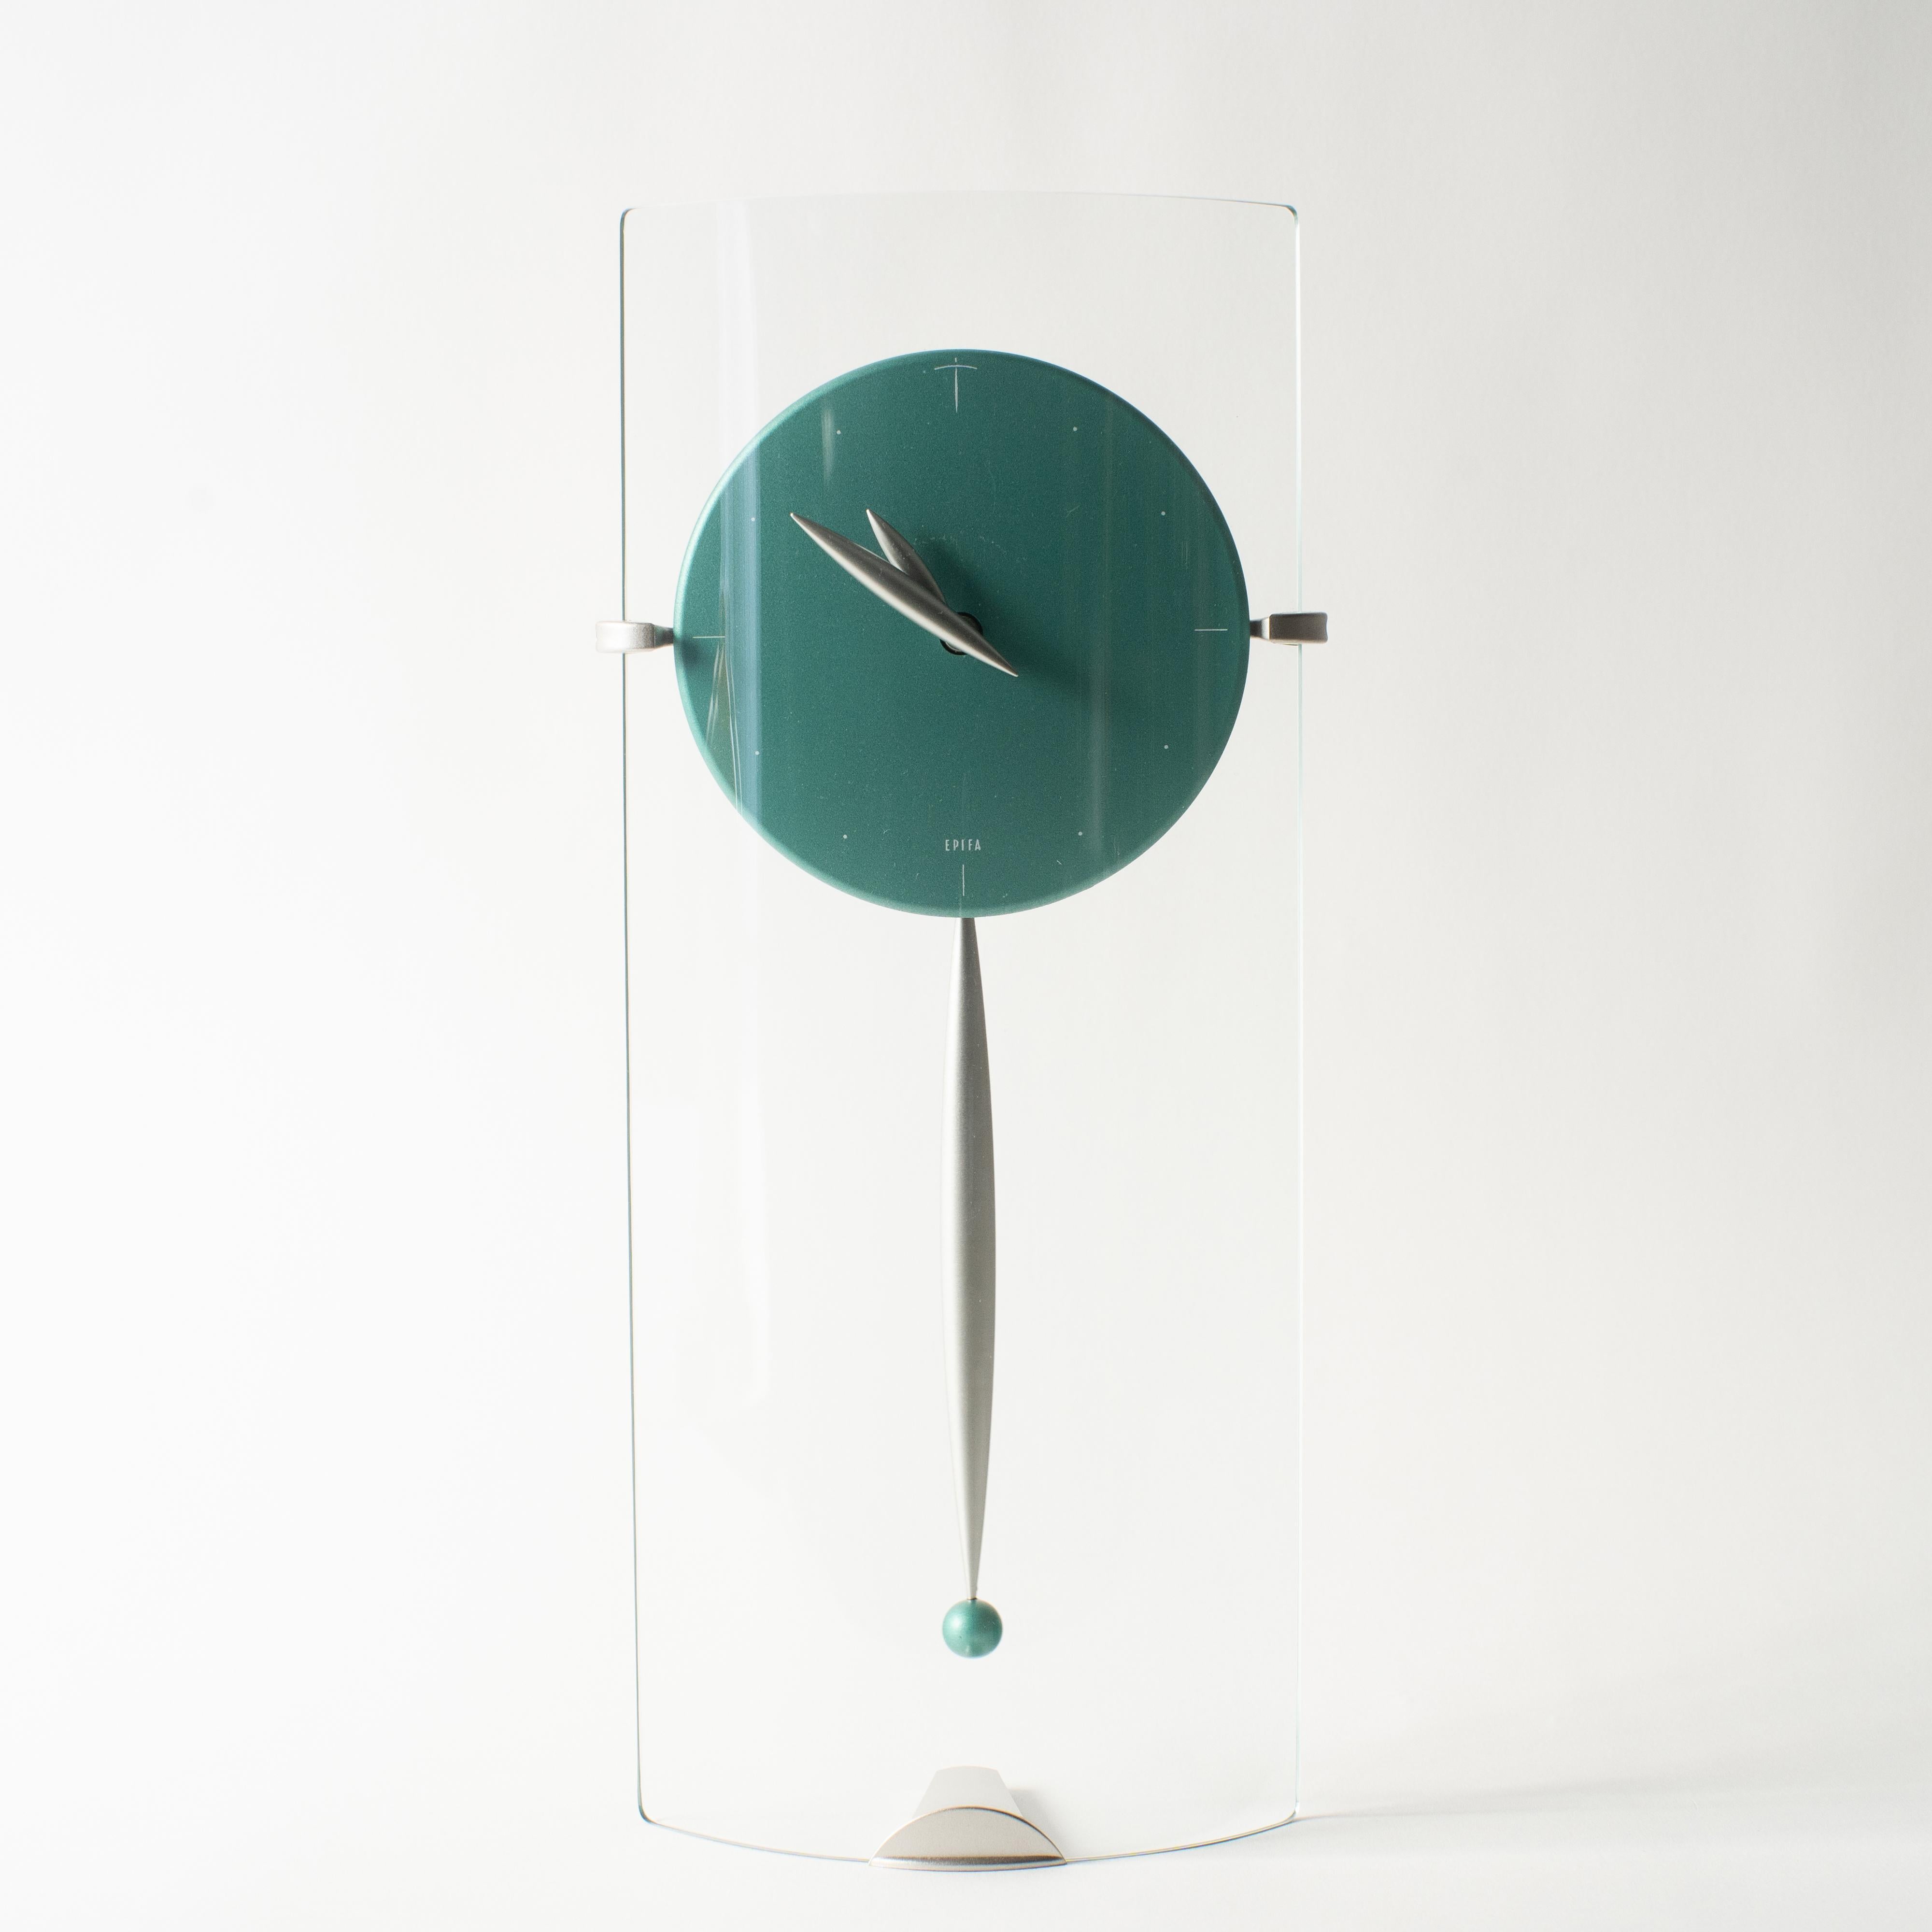 Pendule en verre de Sessa. Il peut être utilisé aussi bien posé sur la table que suspendu au mur. Takashi Kato a conçu de nombreuses horloges dans les années 1980-1990. Certaines collections d'horloges ont été lancées par Neos Lorenz sur le marché